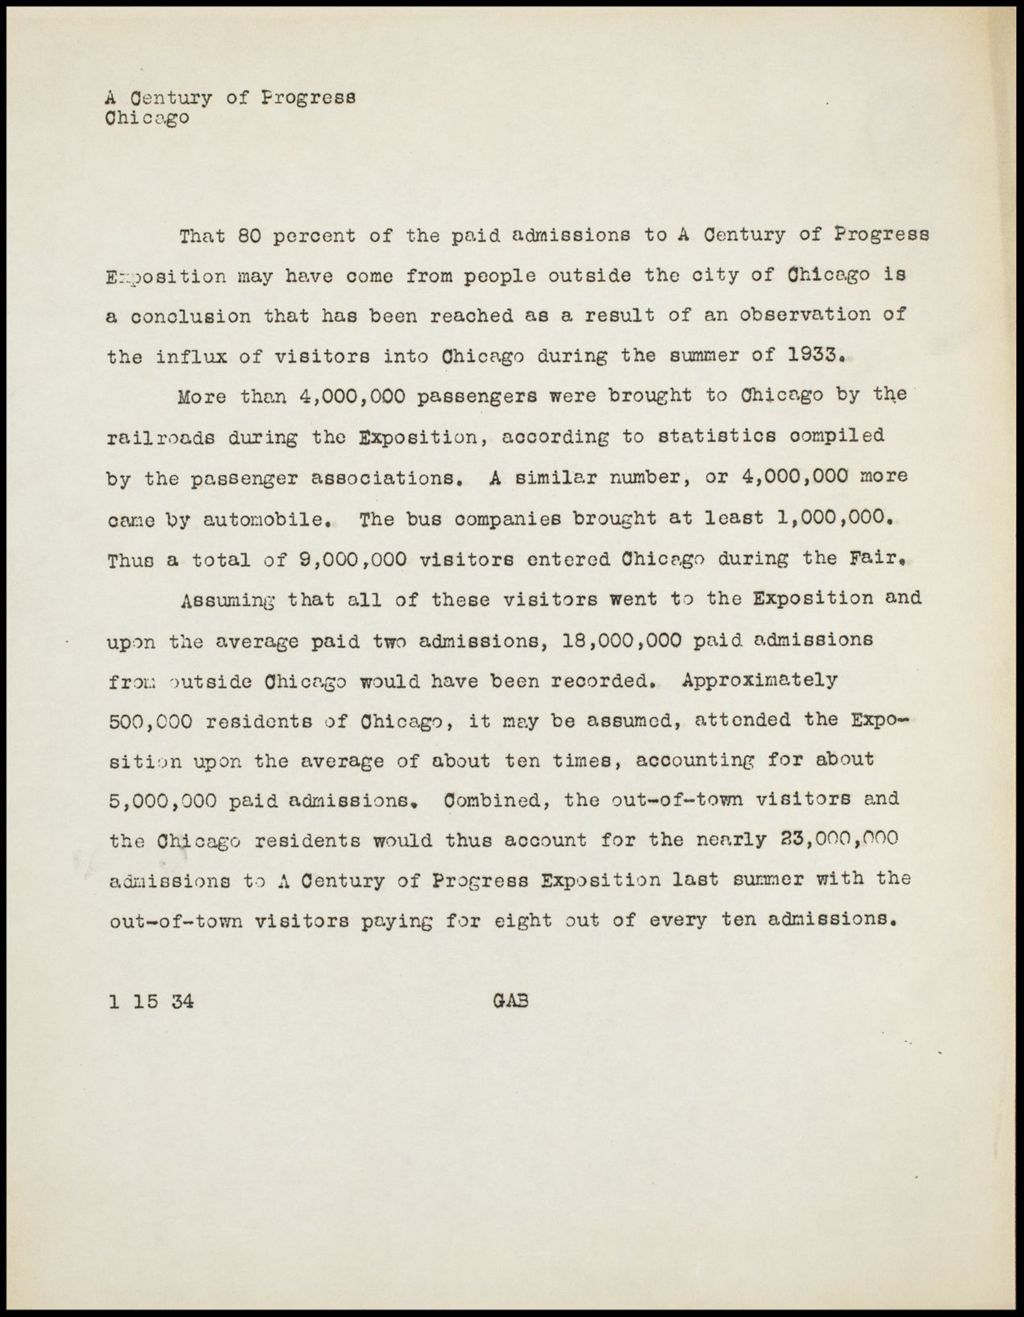 Miniature of Attendance, 1934 (Folder 14-148)